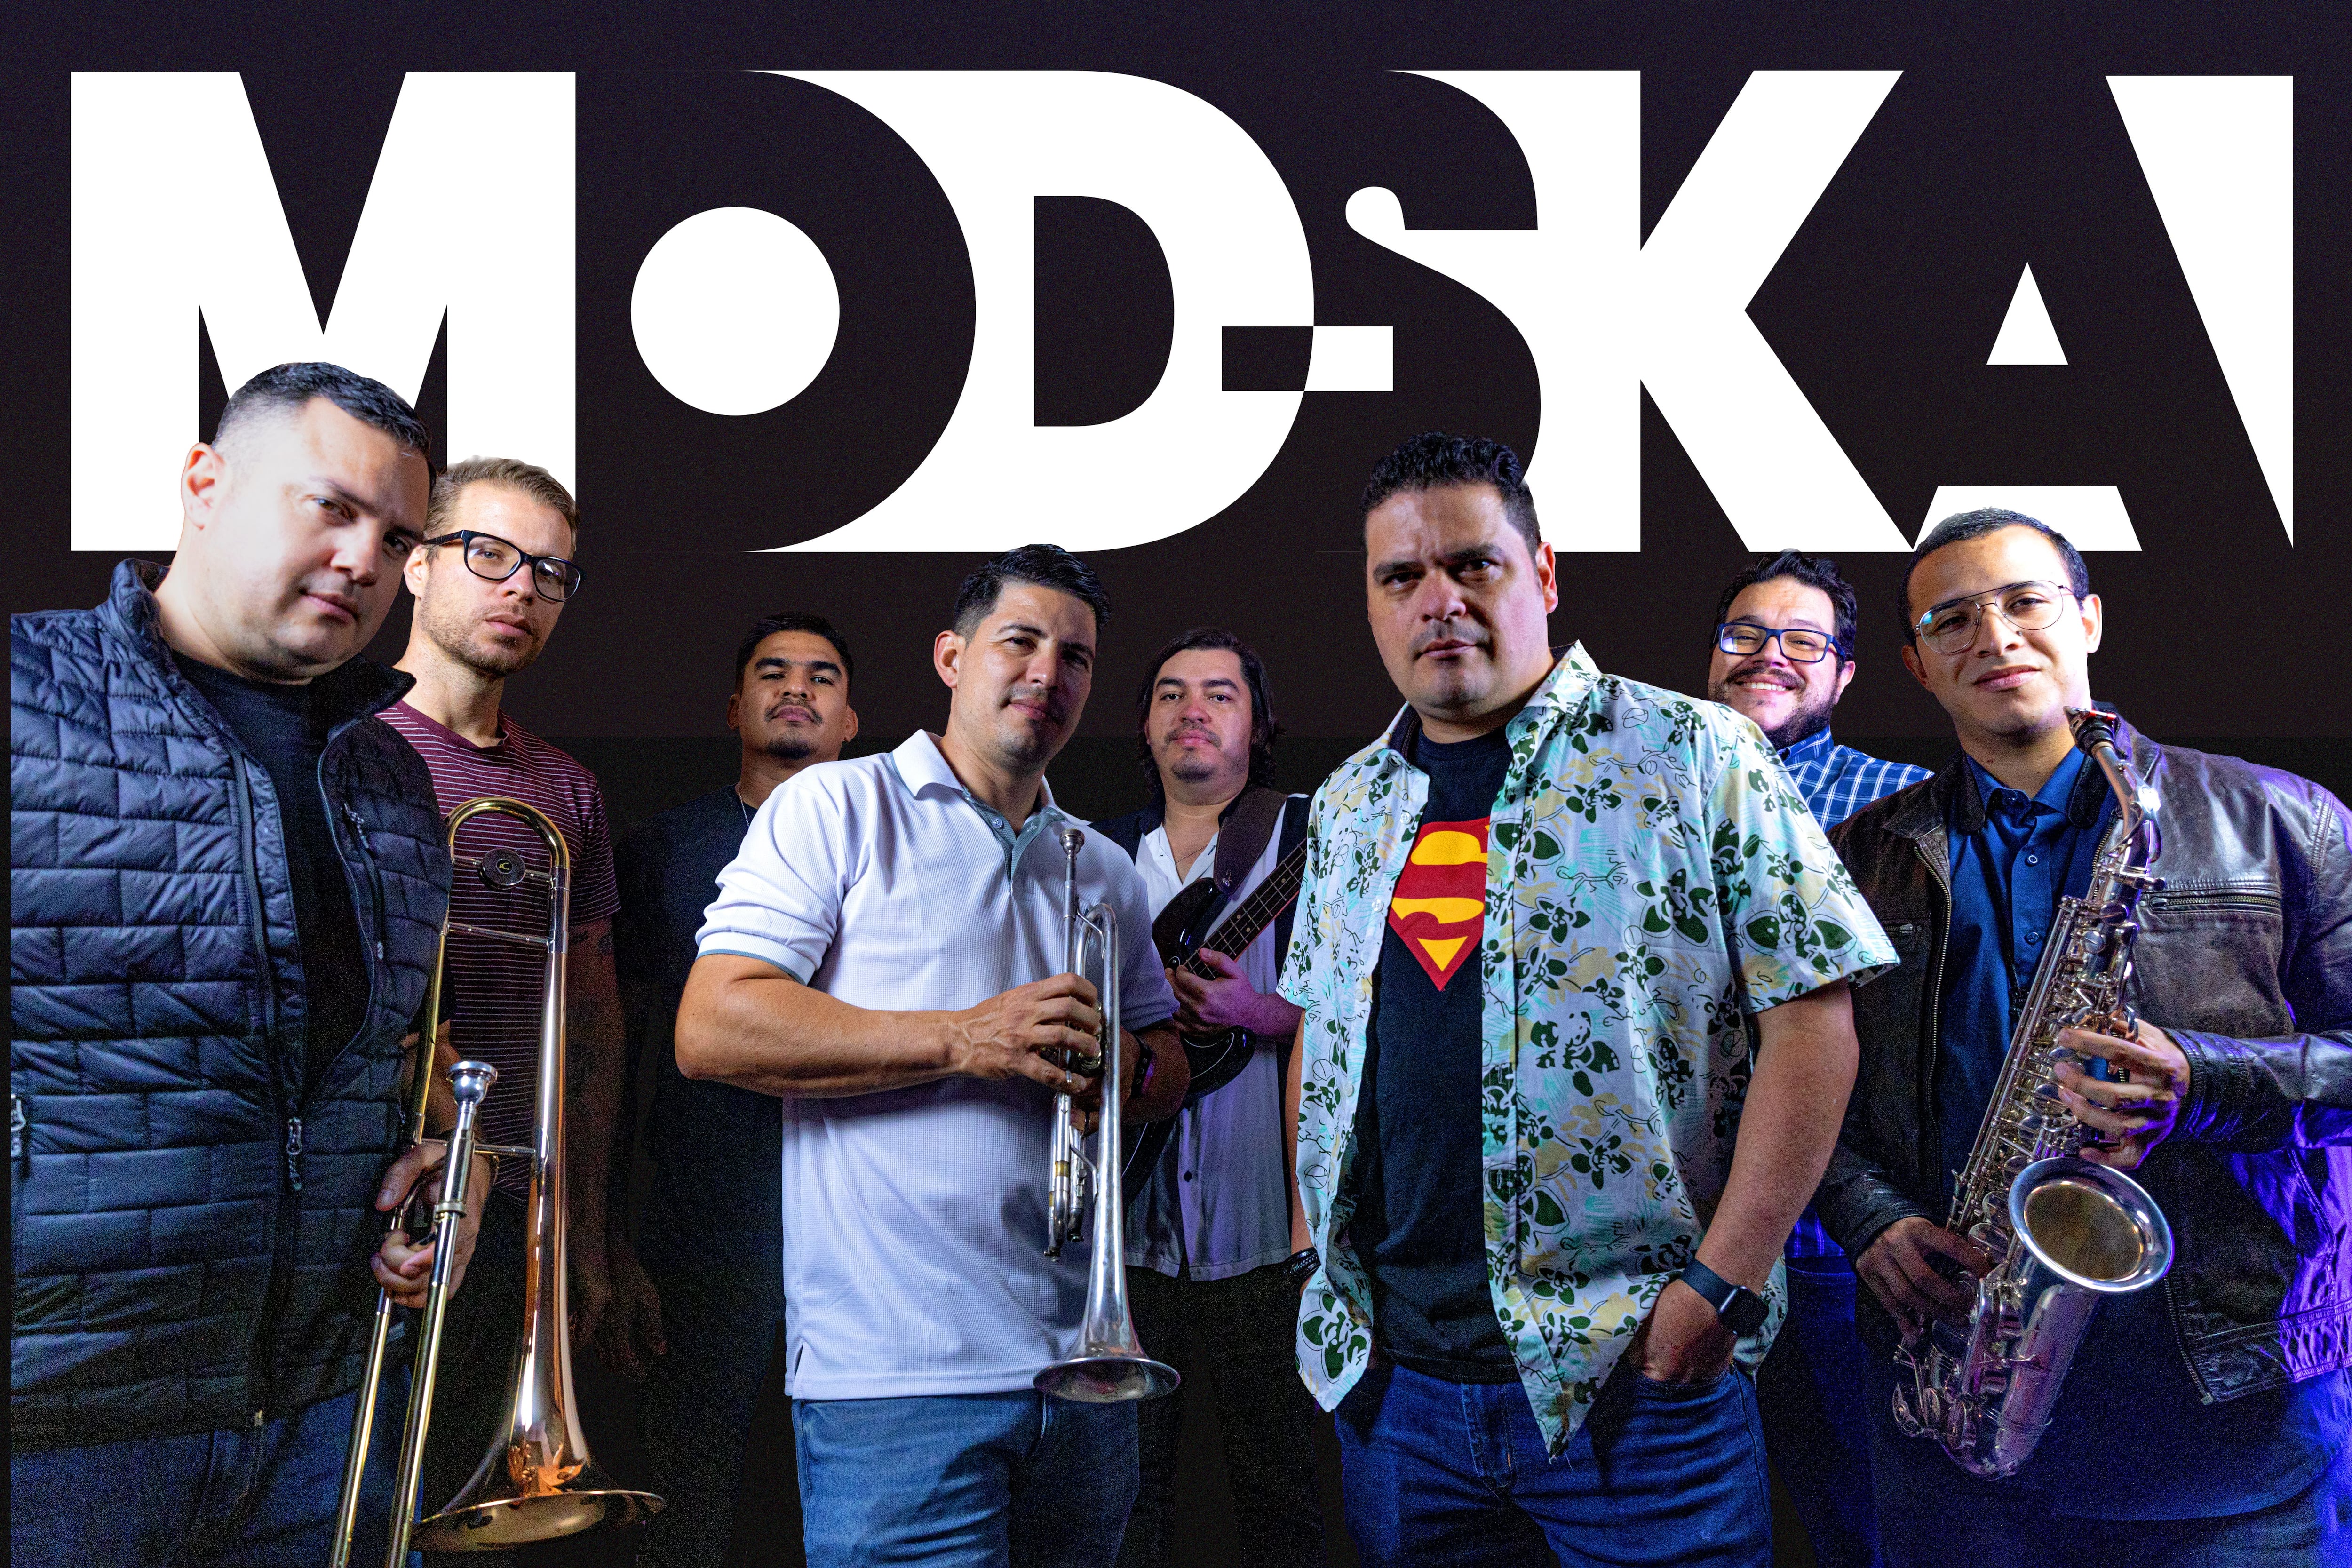 La versión 2022 de Mod Ska combina viejos miembros de la banda con nuevos compañeros.  Óscar Ibarra (voz), Adrián Poveda (Guitarra), Douglas Orozco (trompeta) y Marcial Flores (trombón); se acompañan ahora por Álvaro Mora (bajo), Ali Mondol (batería), Dashiell Giró (saxofón) y Fede Rojas (teclados).